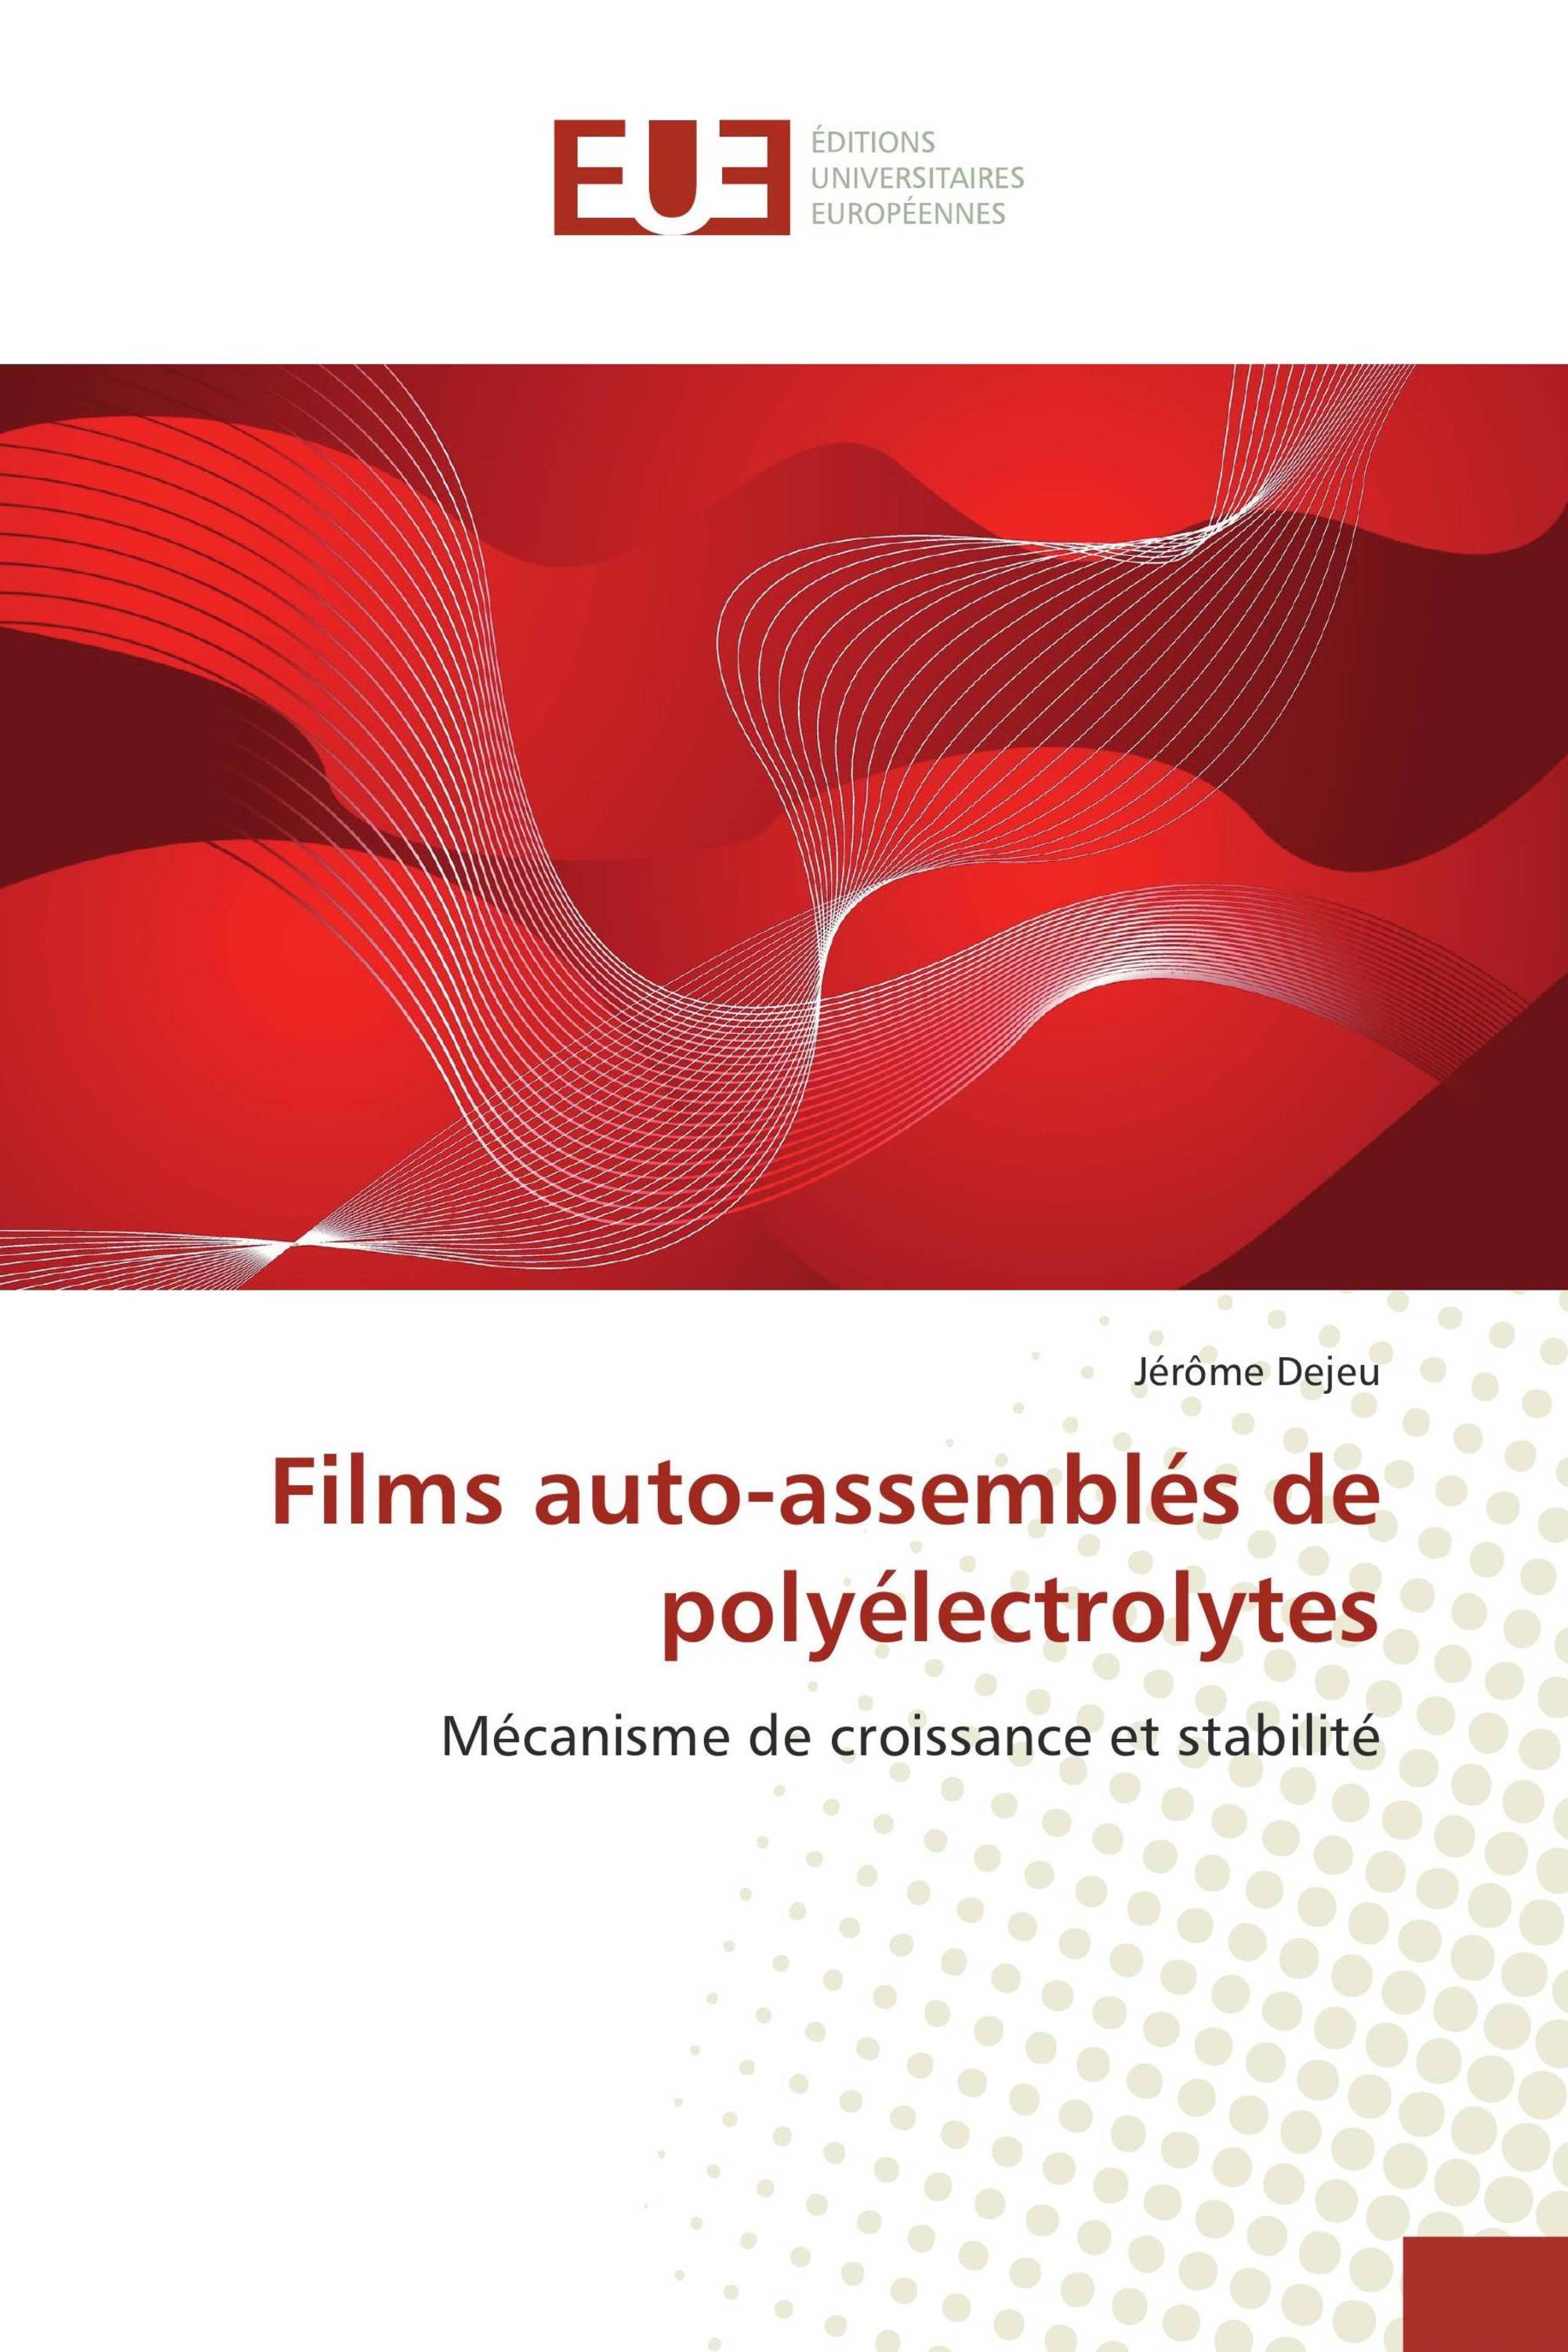 Films auto-assemblés de polyélectrolytes